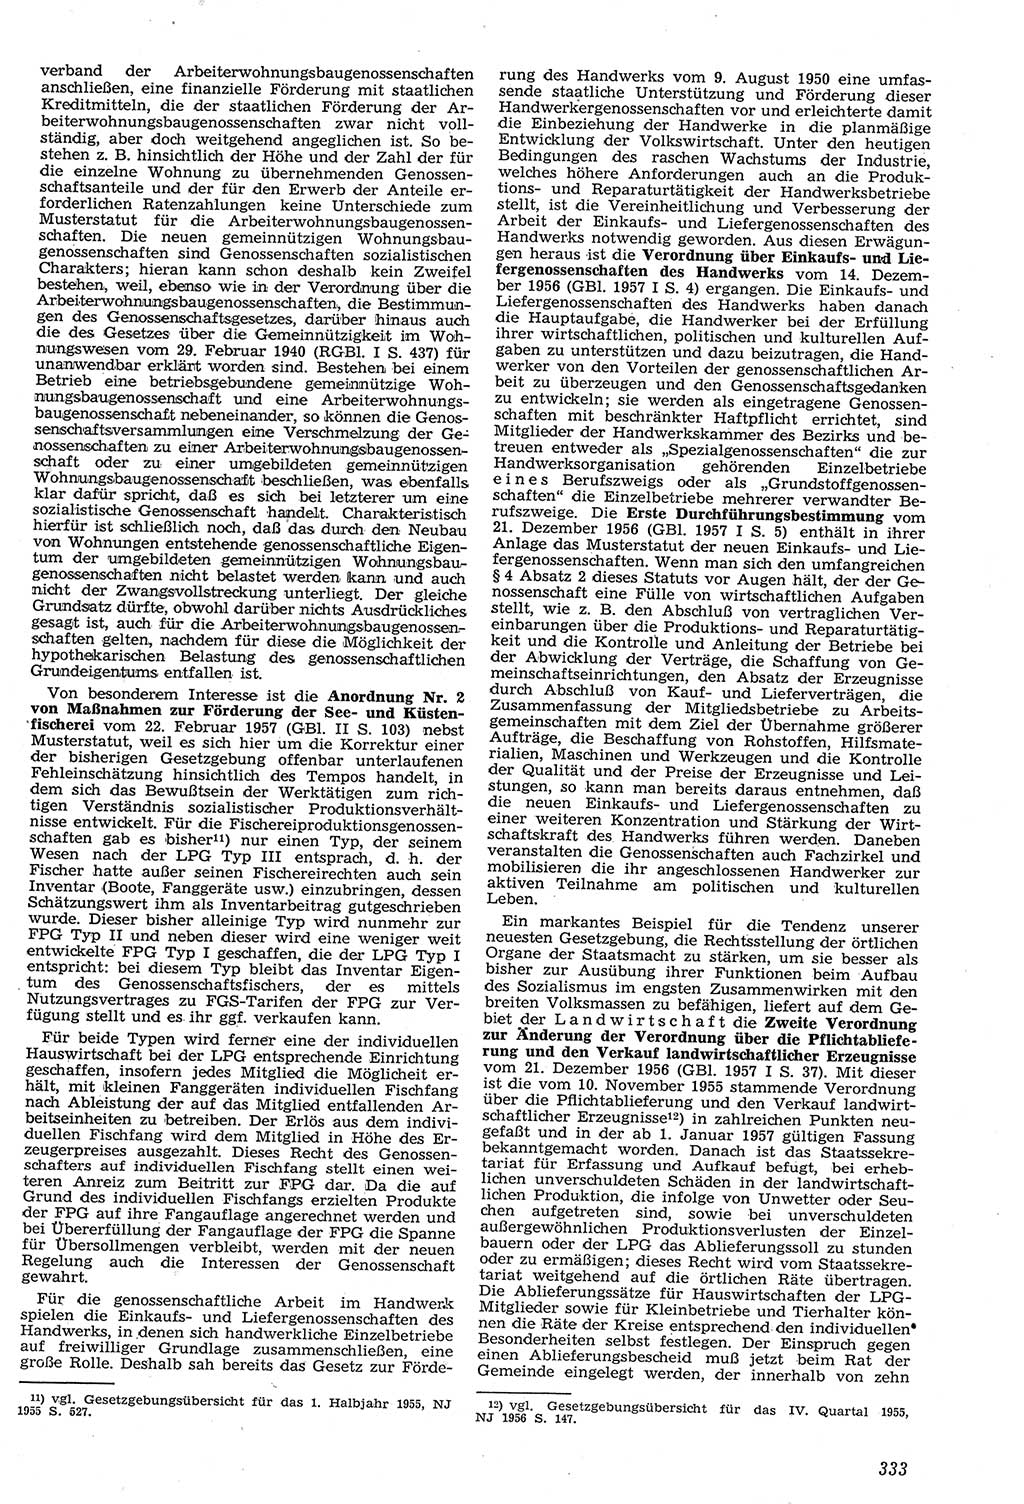 Neue Justiz (NJ), Zeitschrift für Recht und Rechtswissenschaft [Deutsche Demokratische Republik (DDR)], 11. Jahrgang 1957, Seite 333 (NJ DDR 1957, S. 333)